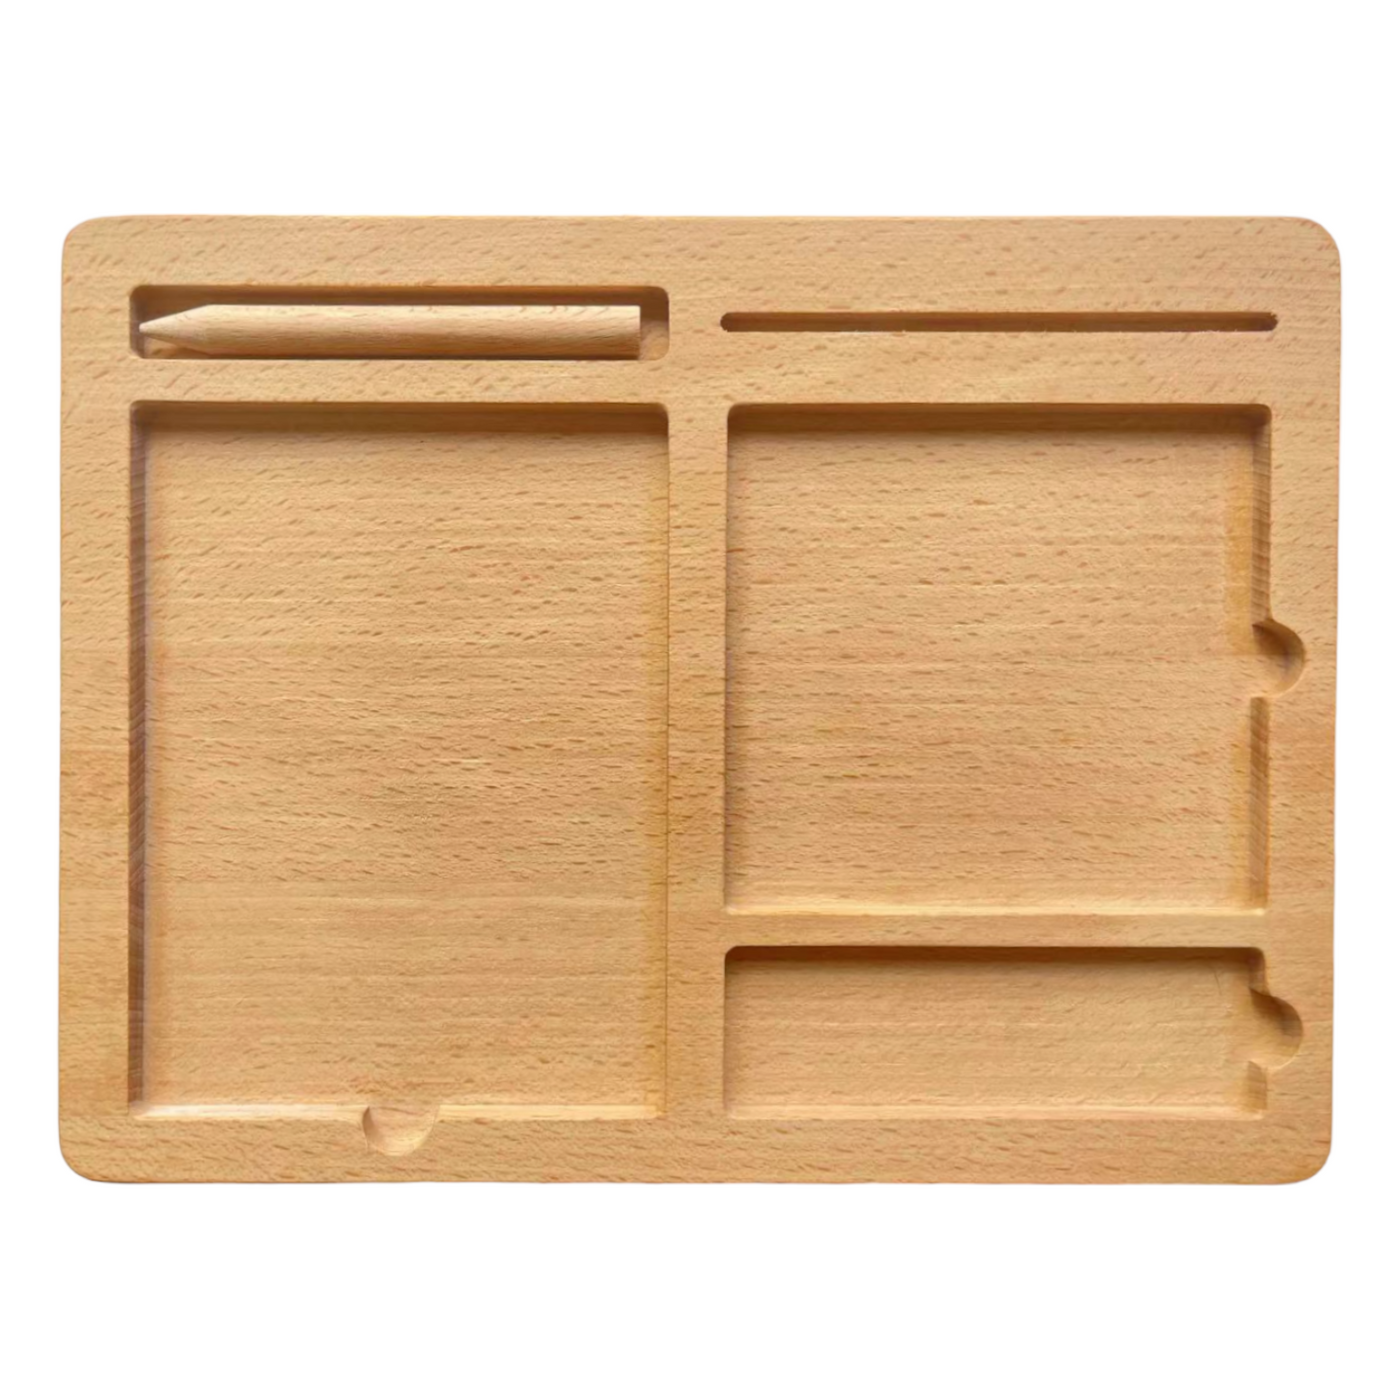 Small Bamboo Cutting Board - Montessori Services